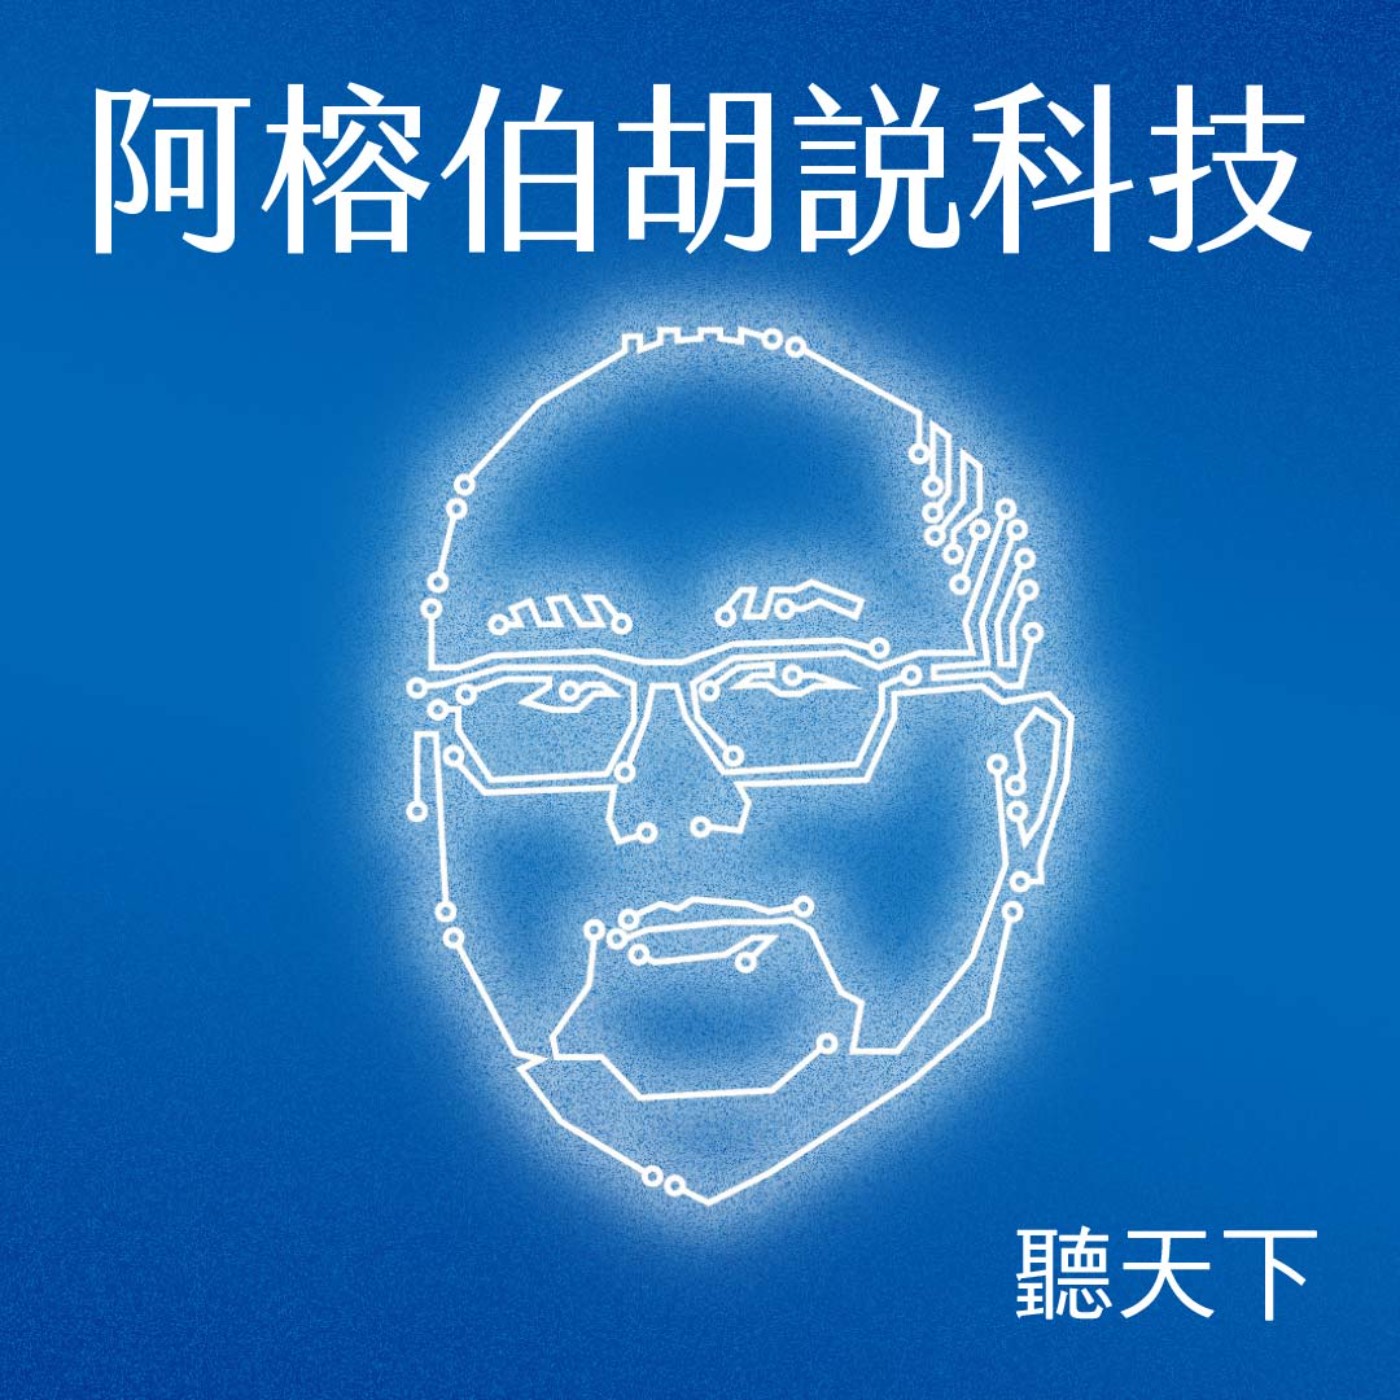 【阿榕伯胡說科技Ep.27】「一個世界兩個系統」，台灣最不怕紅色供應鏈的科技公司 feat. 何春盛